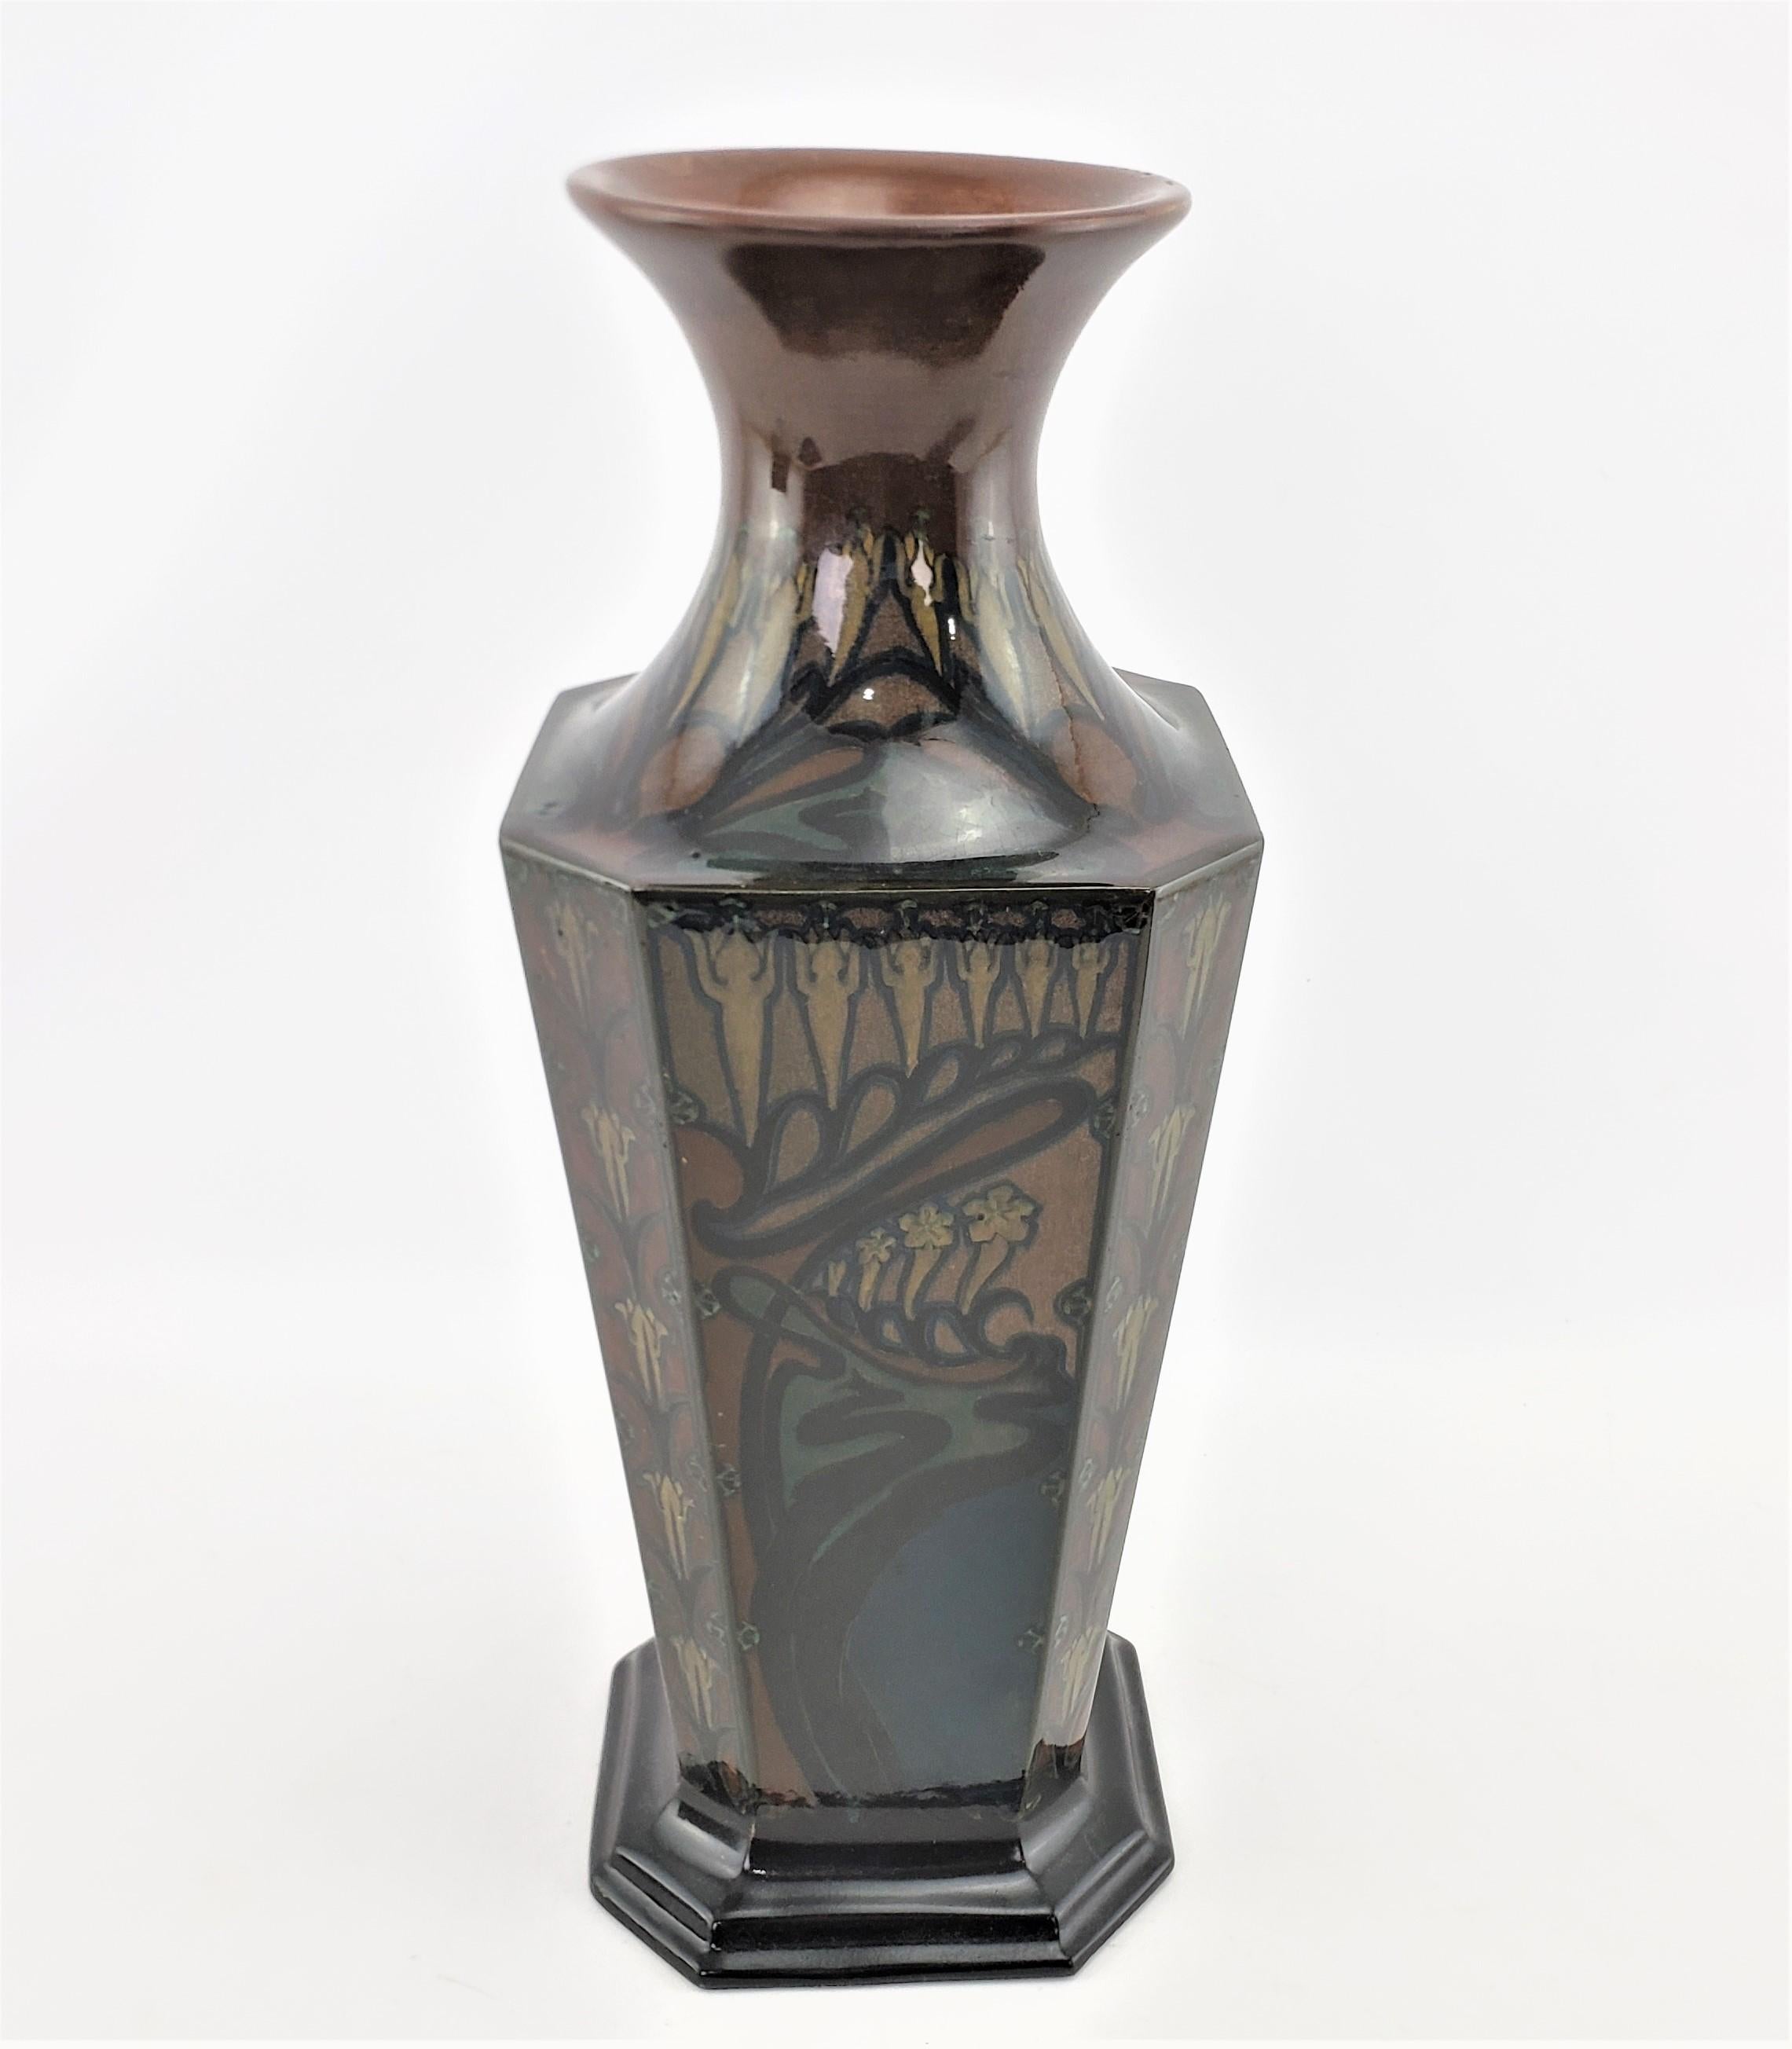 Large Antique Art Nouveau Rozenburg Art Pottery Vase with Landscape Decoration In Good Condition For Sale In Hamilton, Ontario